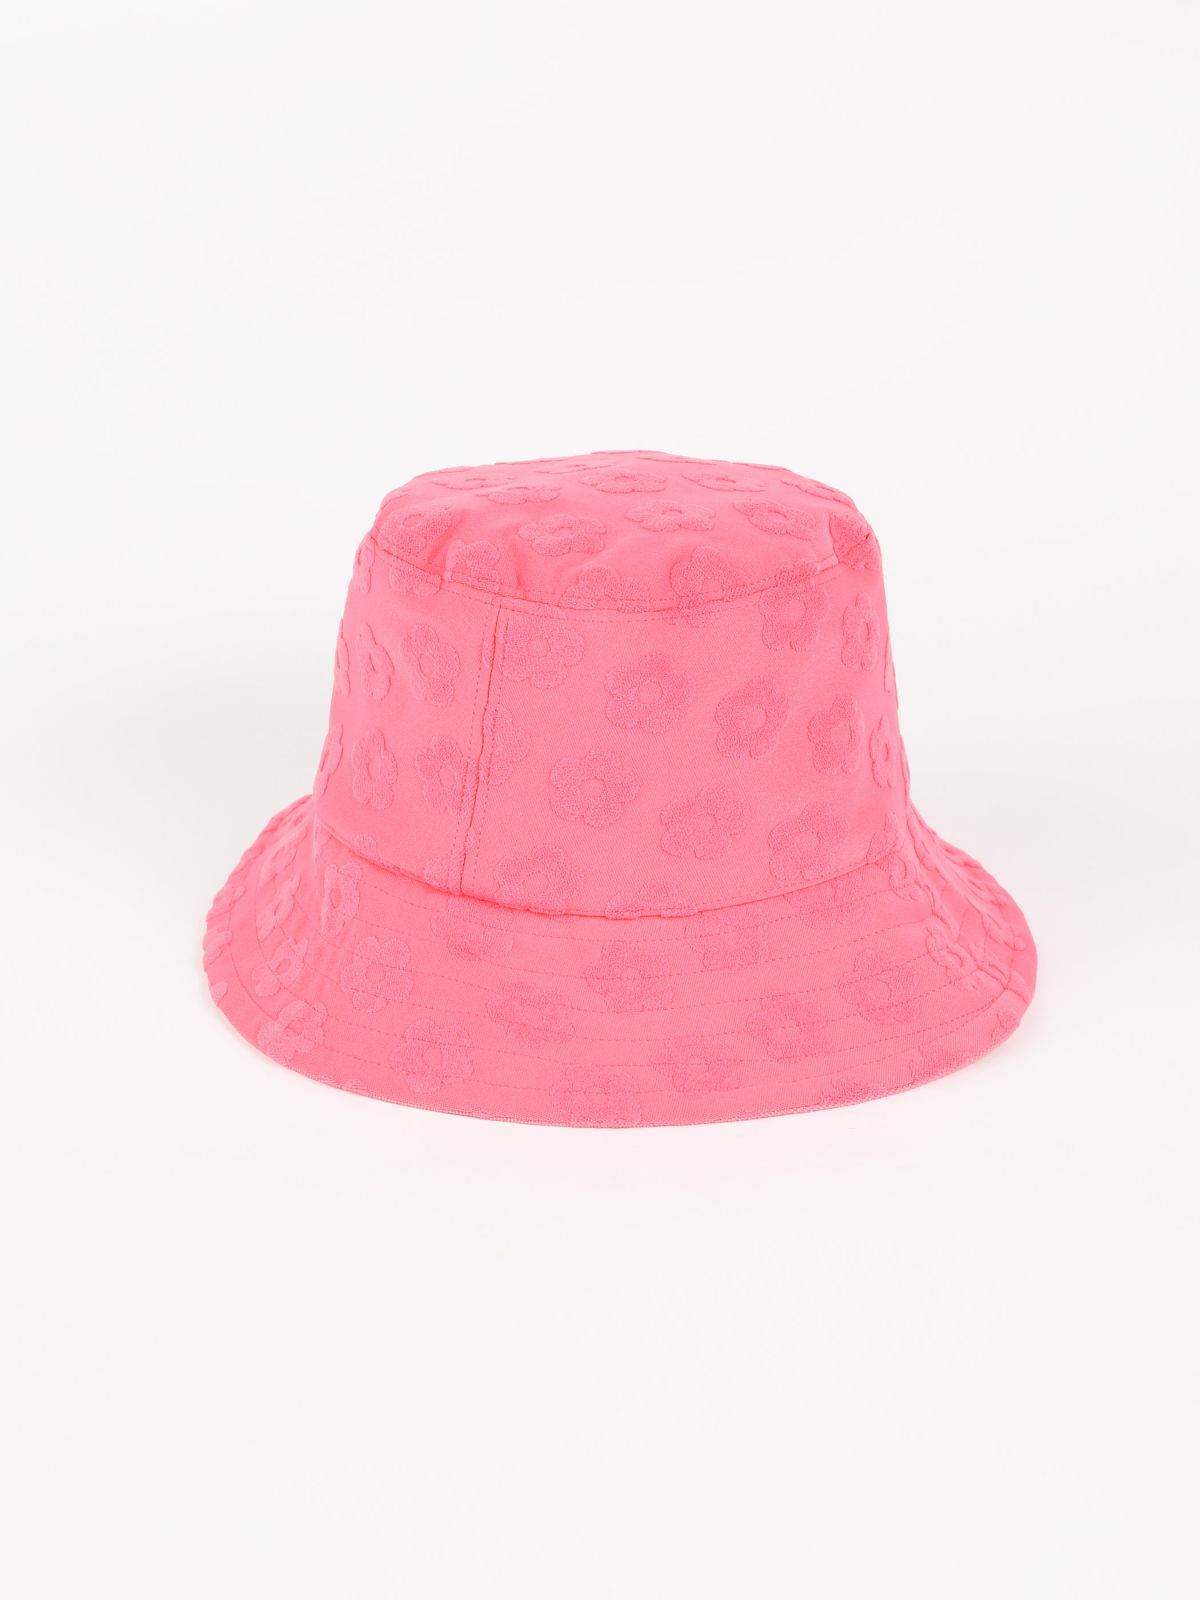  כובע באקט בטקסטורת פרחים / Alma Ola של TX COLLAB